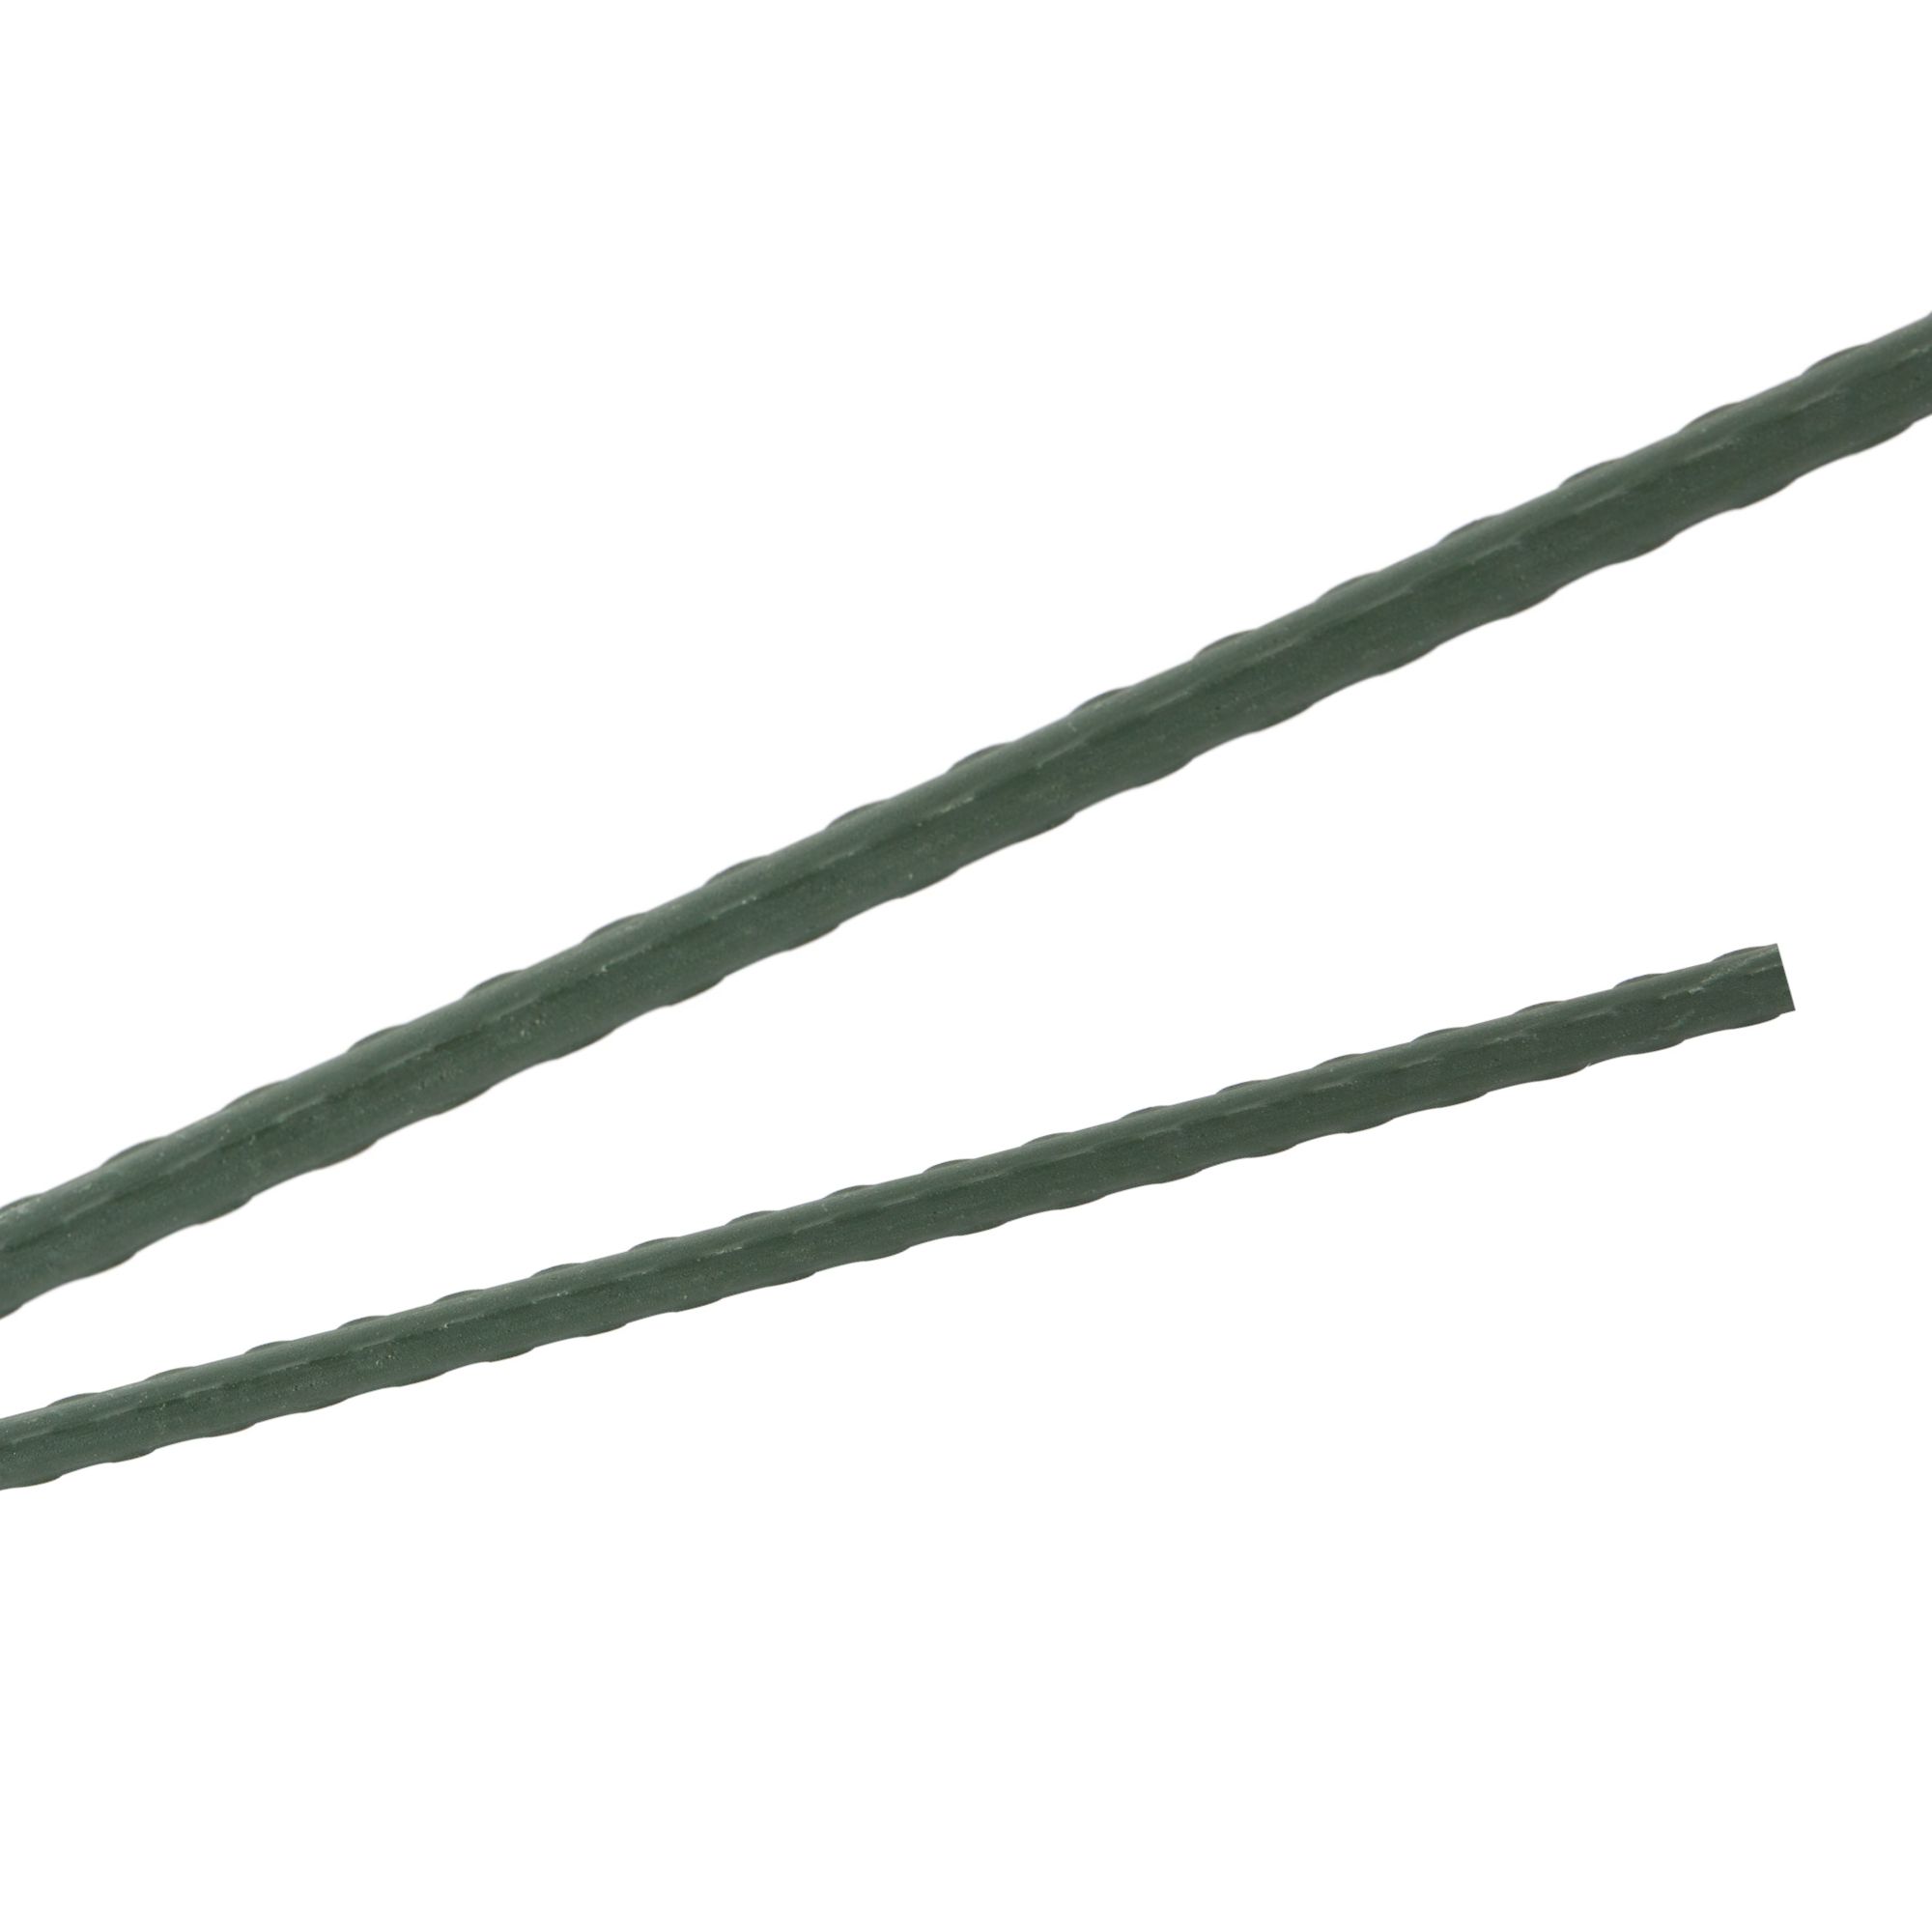 Tyč podpěrná, 8mm, 90cm, kov+PVC, zelená 0.052000 Kg GIGA Sklad20 211783 114